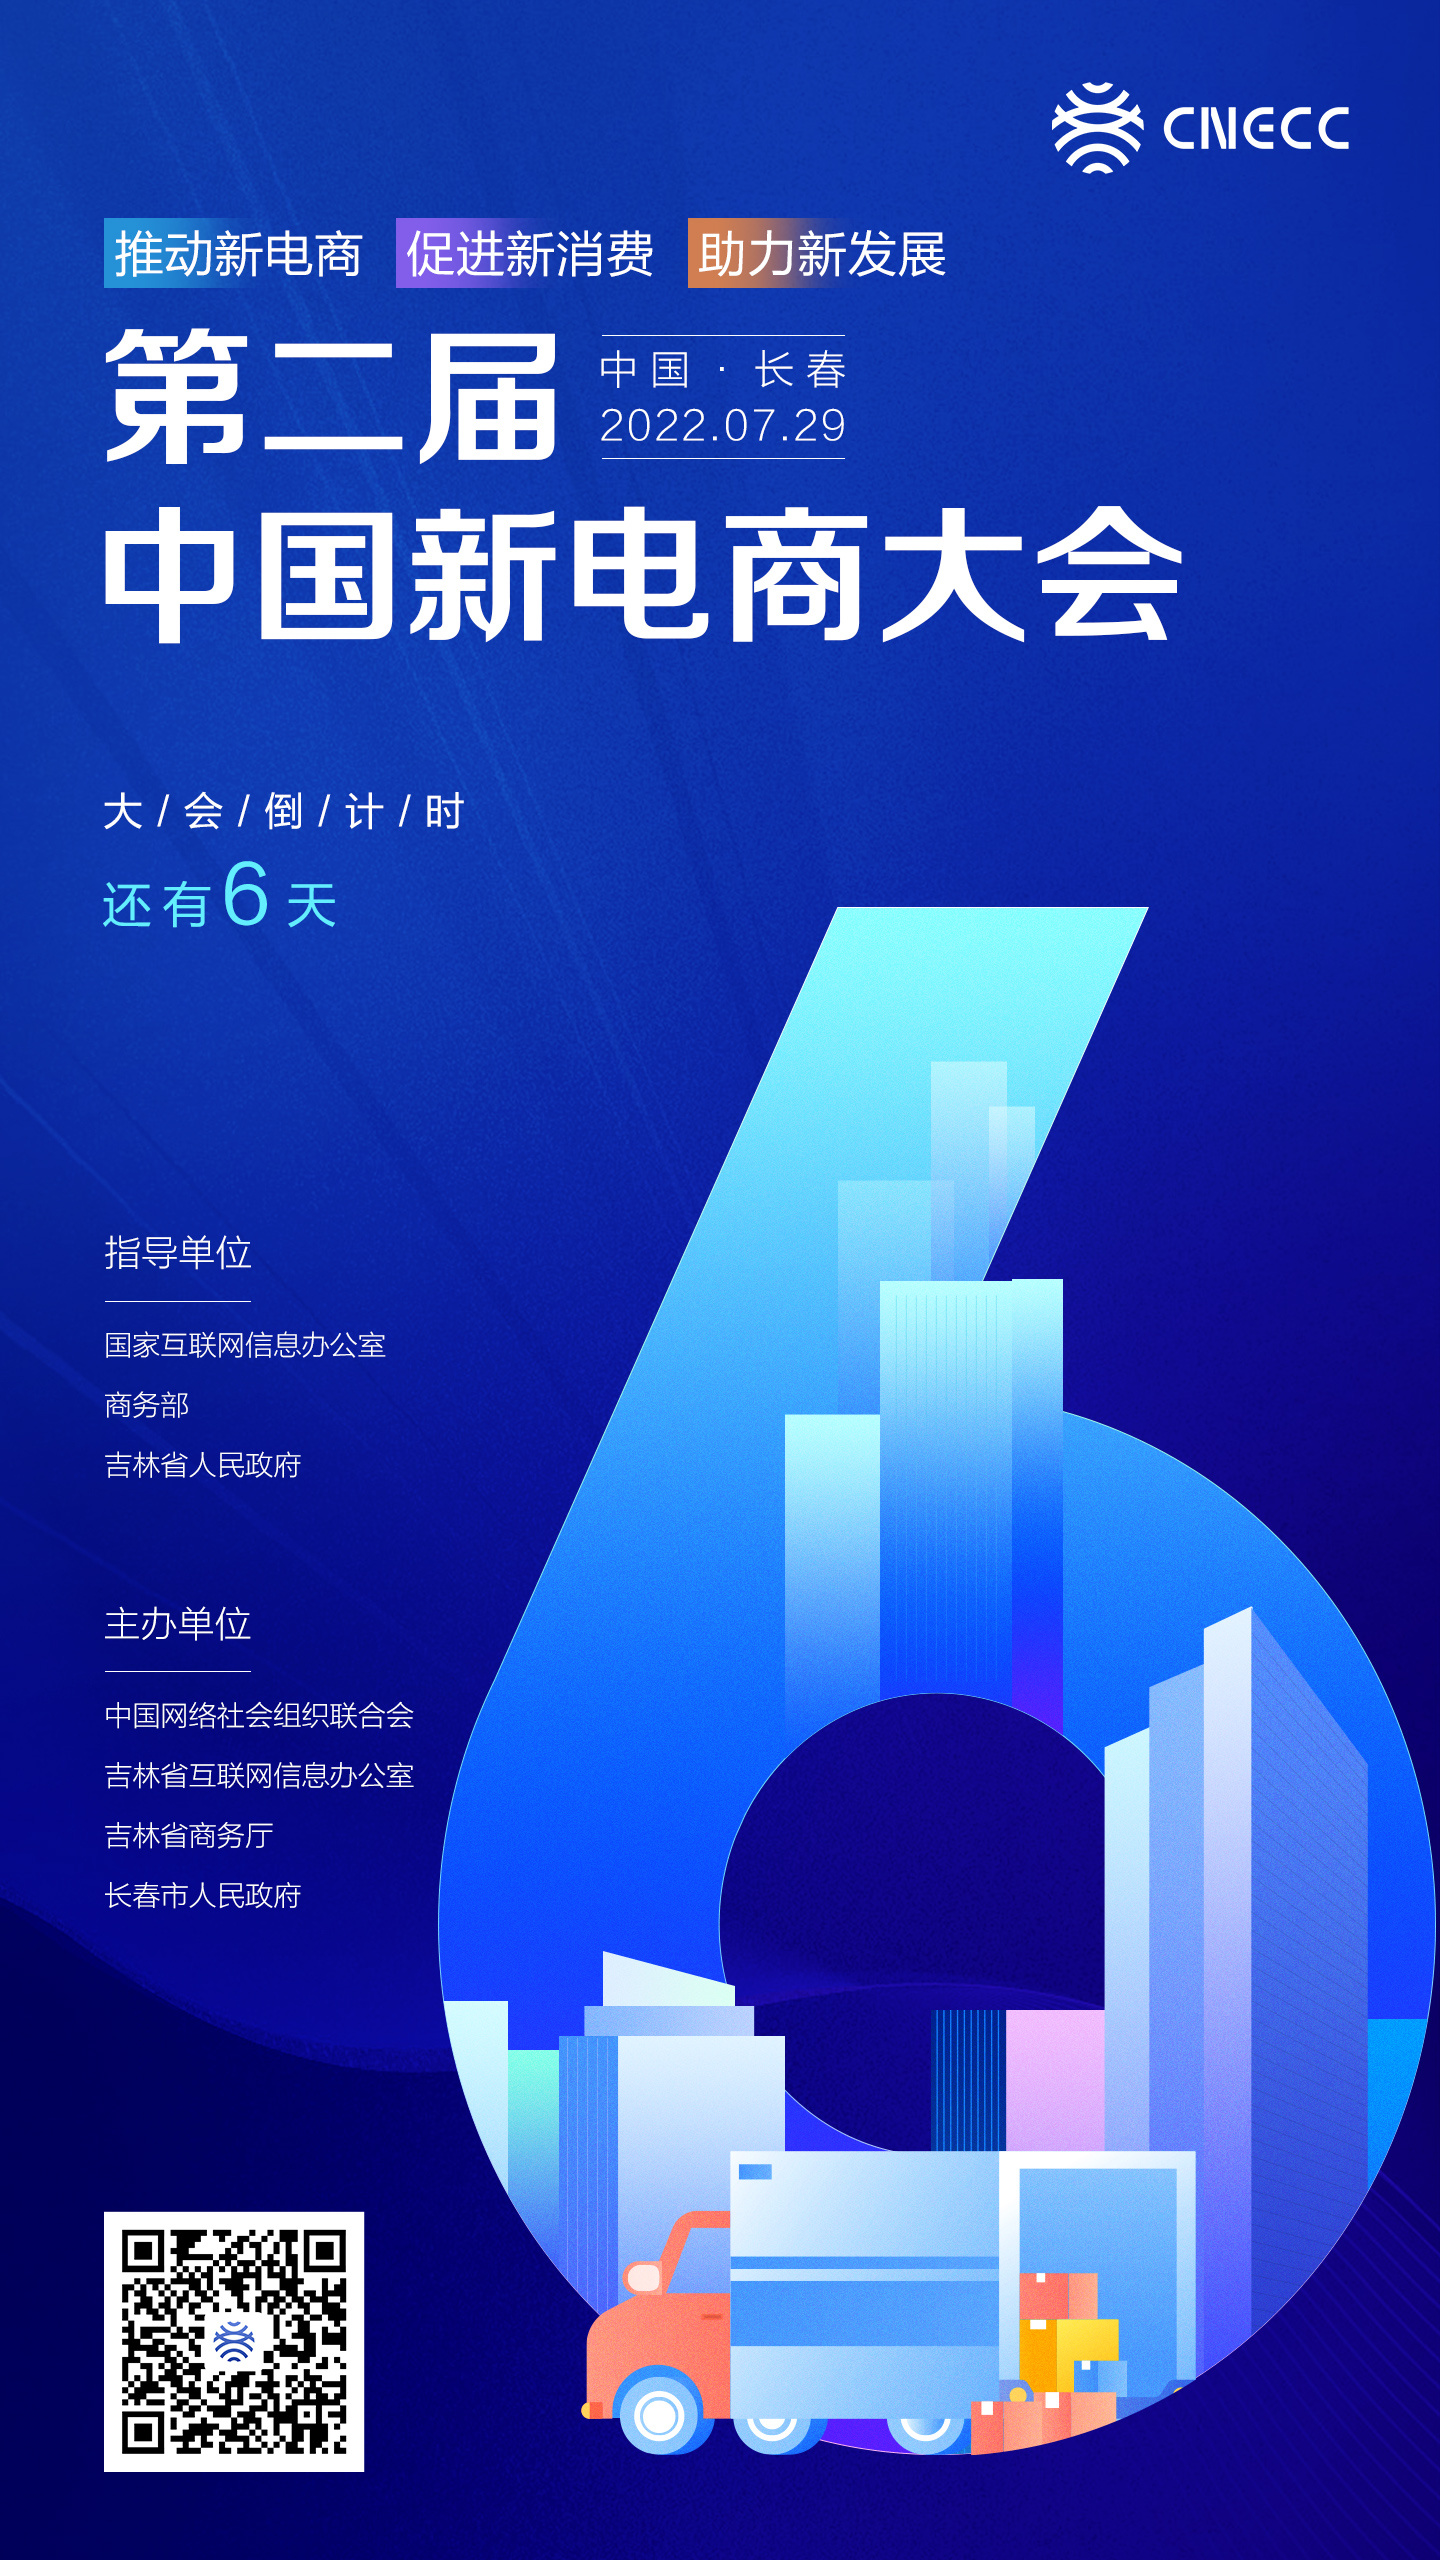 第二届中国新电商大会倒计时还有6天